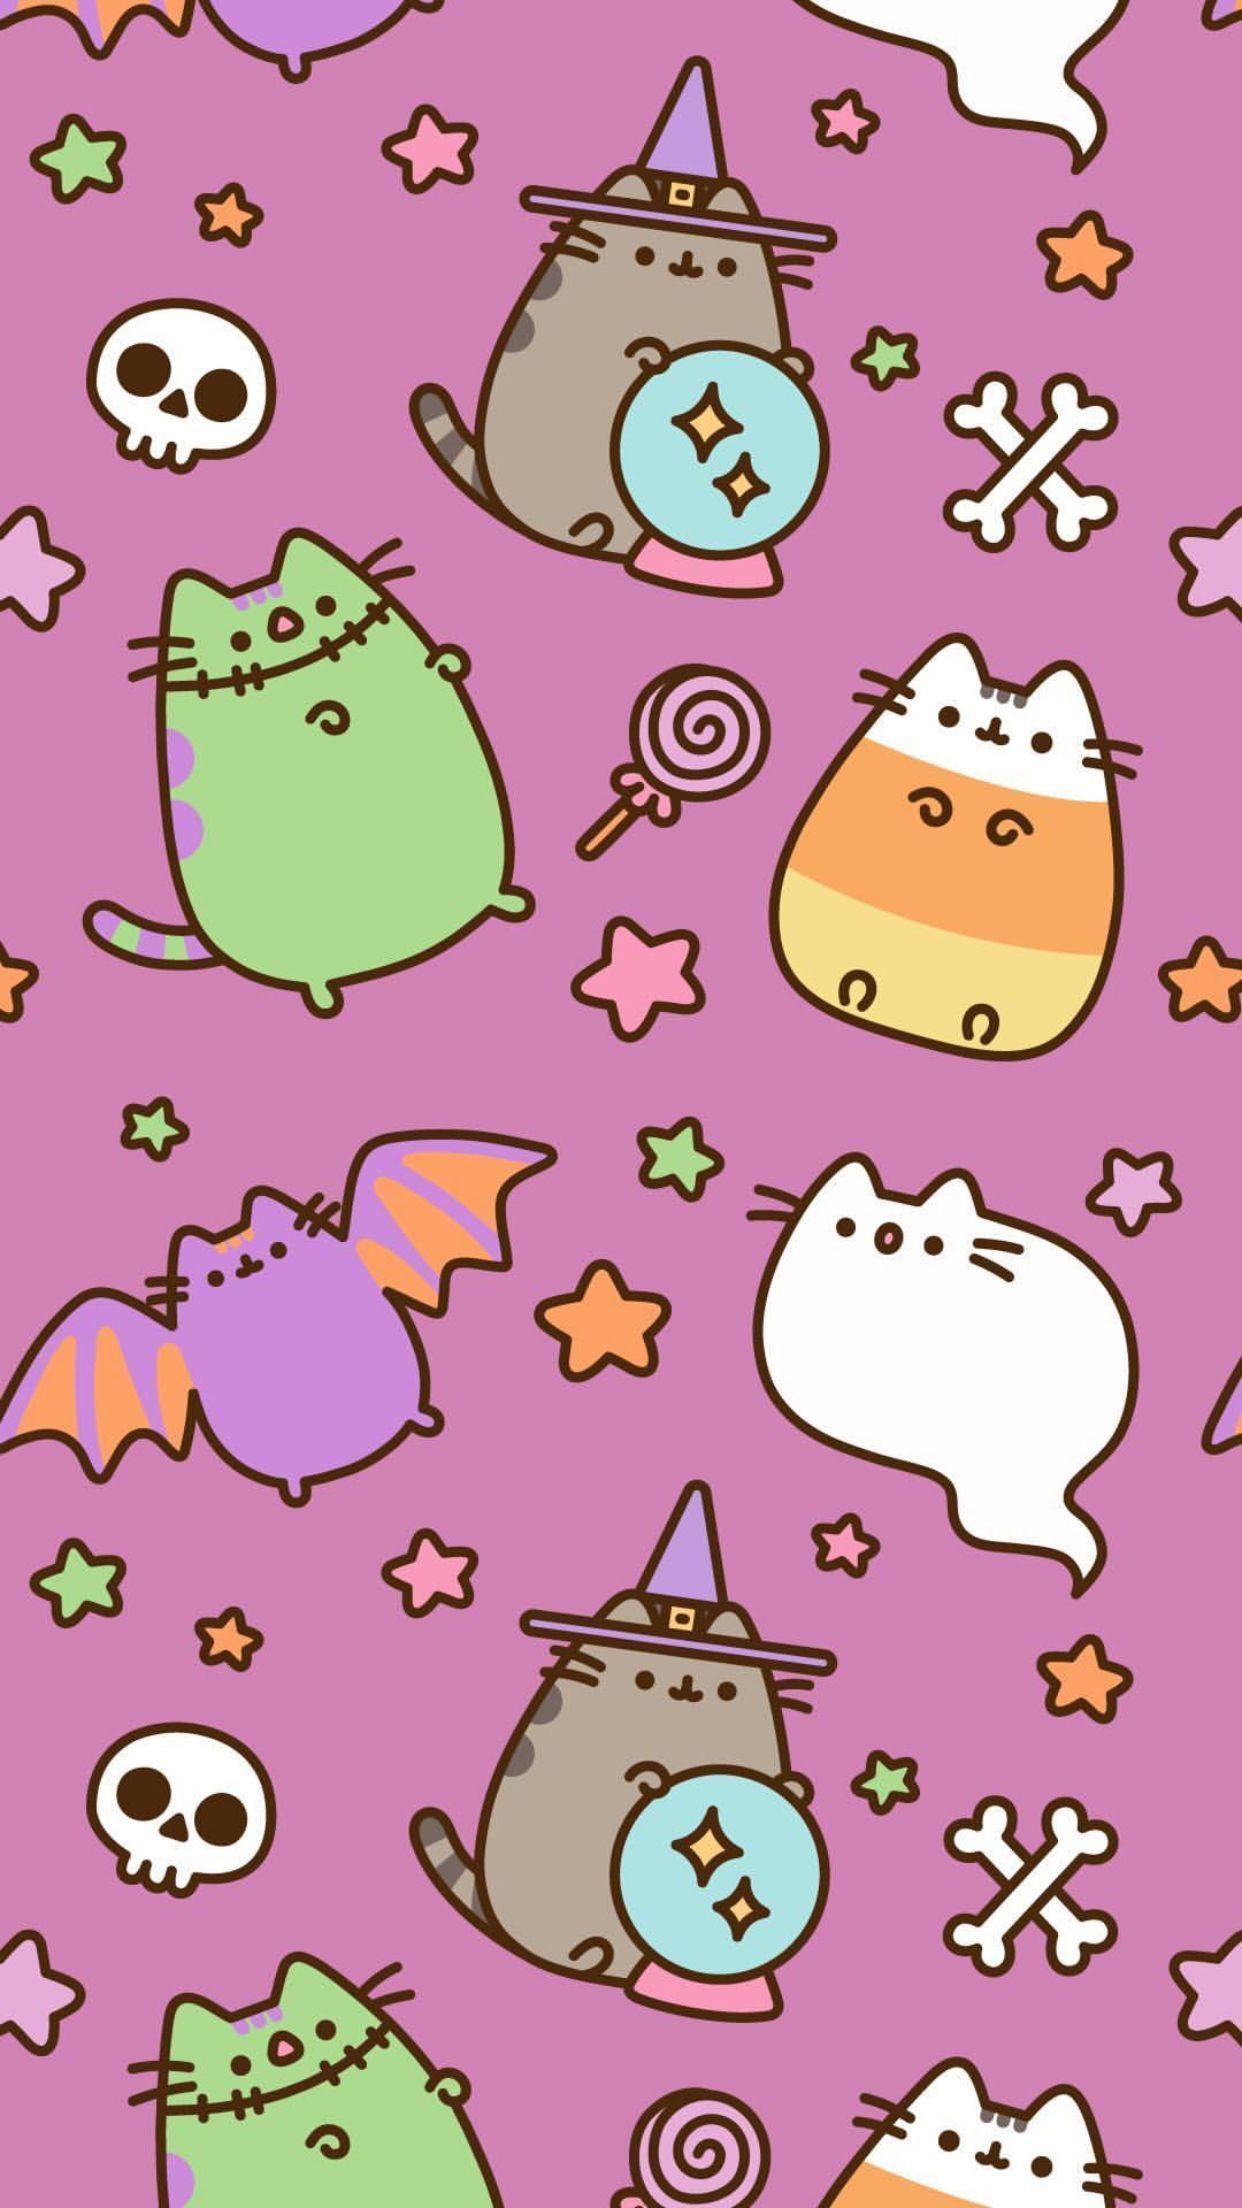 Pusheen Trick or Treat  YouTube  Halloween wallpaper cute Pusheen cute  Kawaii drawings